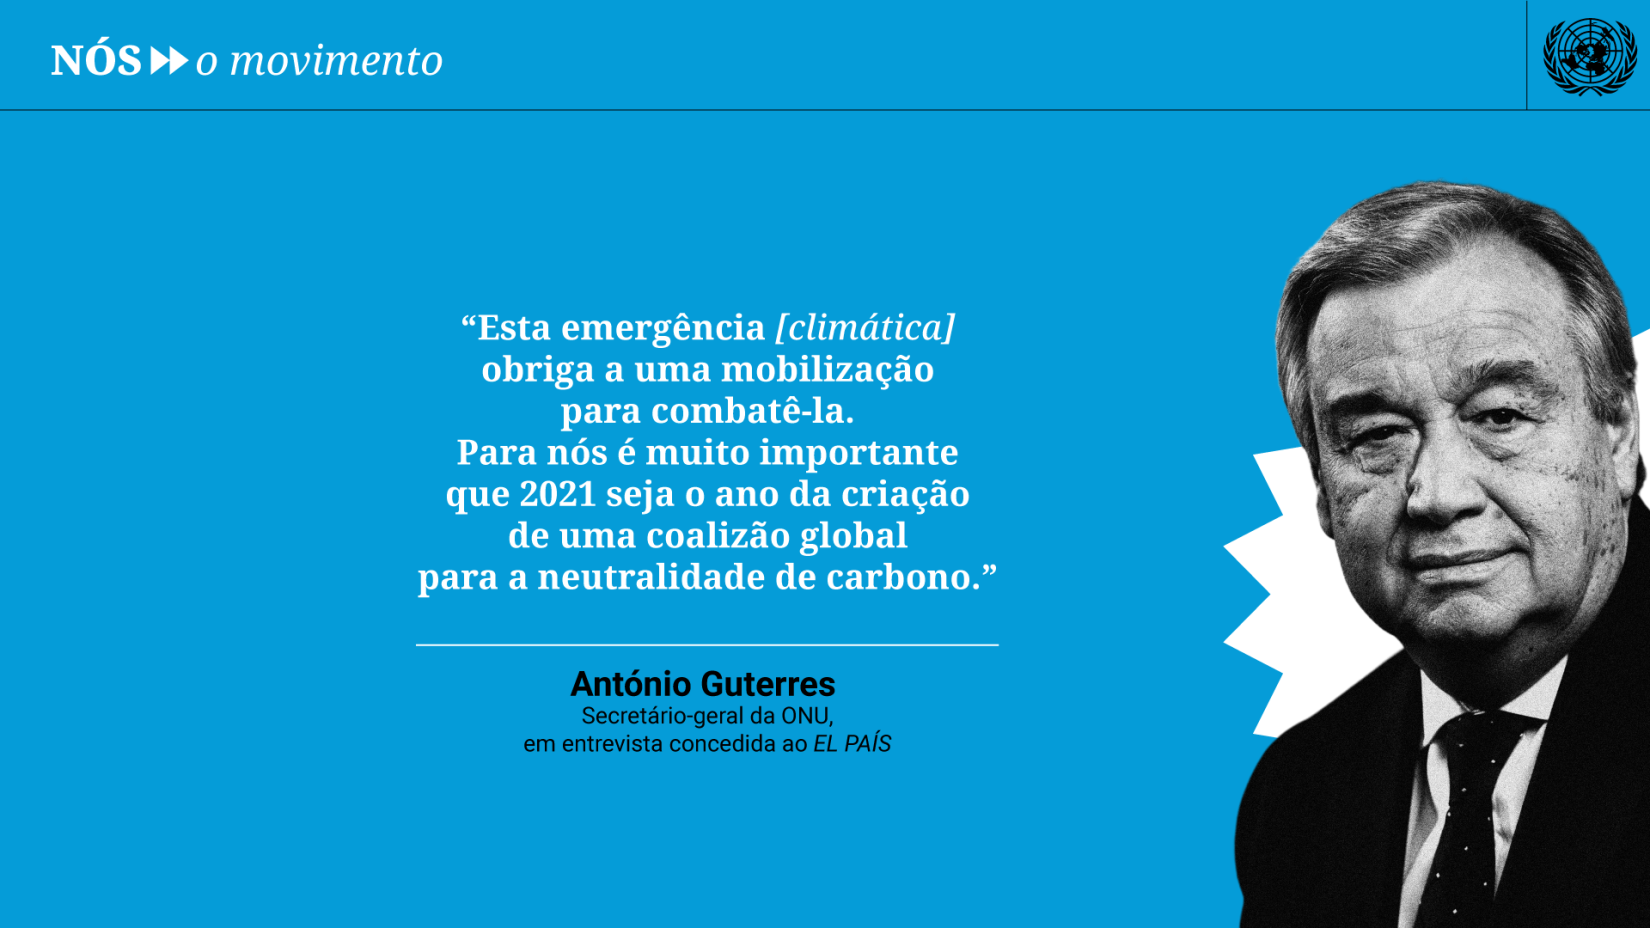 Secretário-geral da ONU, António Guterres, participa da campanha Nós >> o movimento